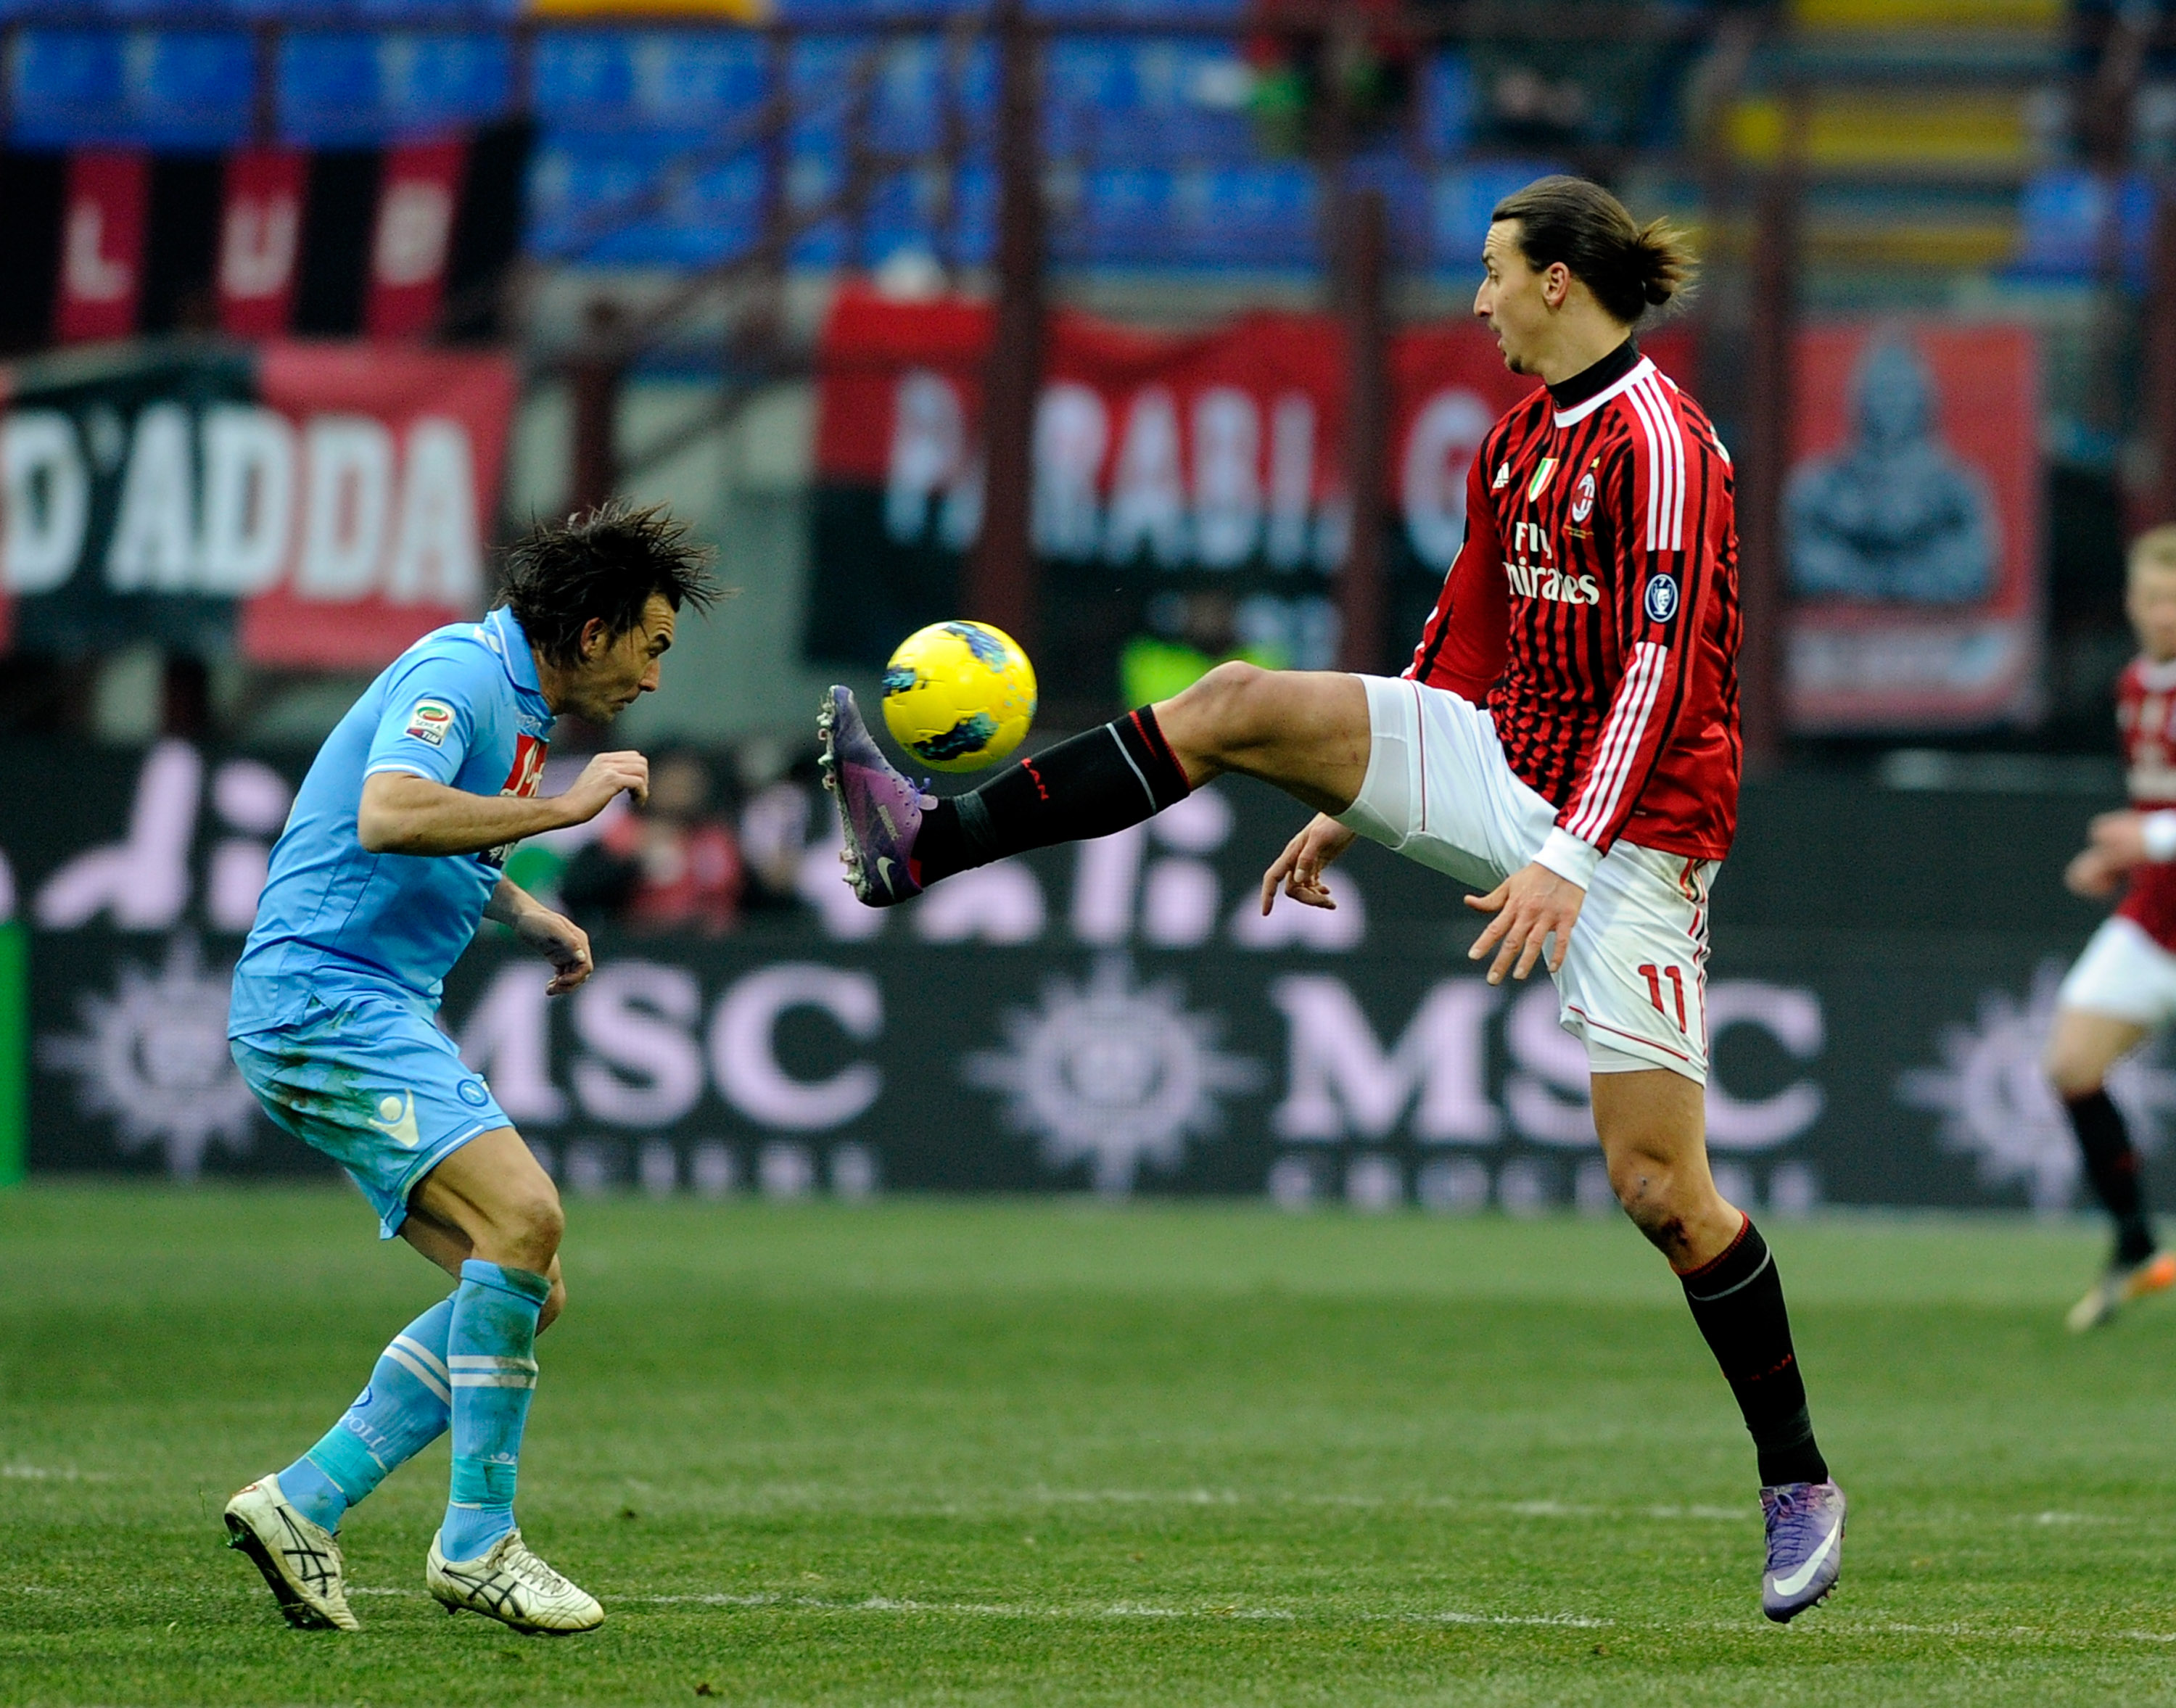 I matchen mot Napoli som slutade 0-0 fick Zlatan rött kort och blev avständ i tre matcher. Varför? Han örfilade Napolis Salvatore Aronica.